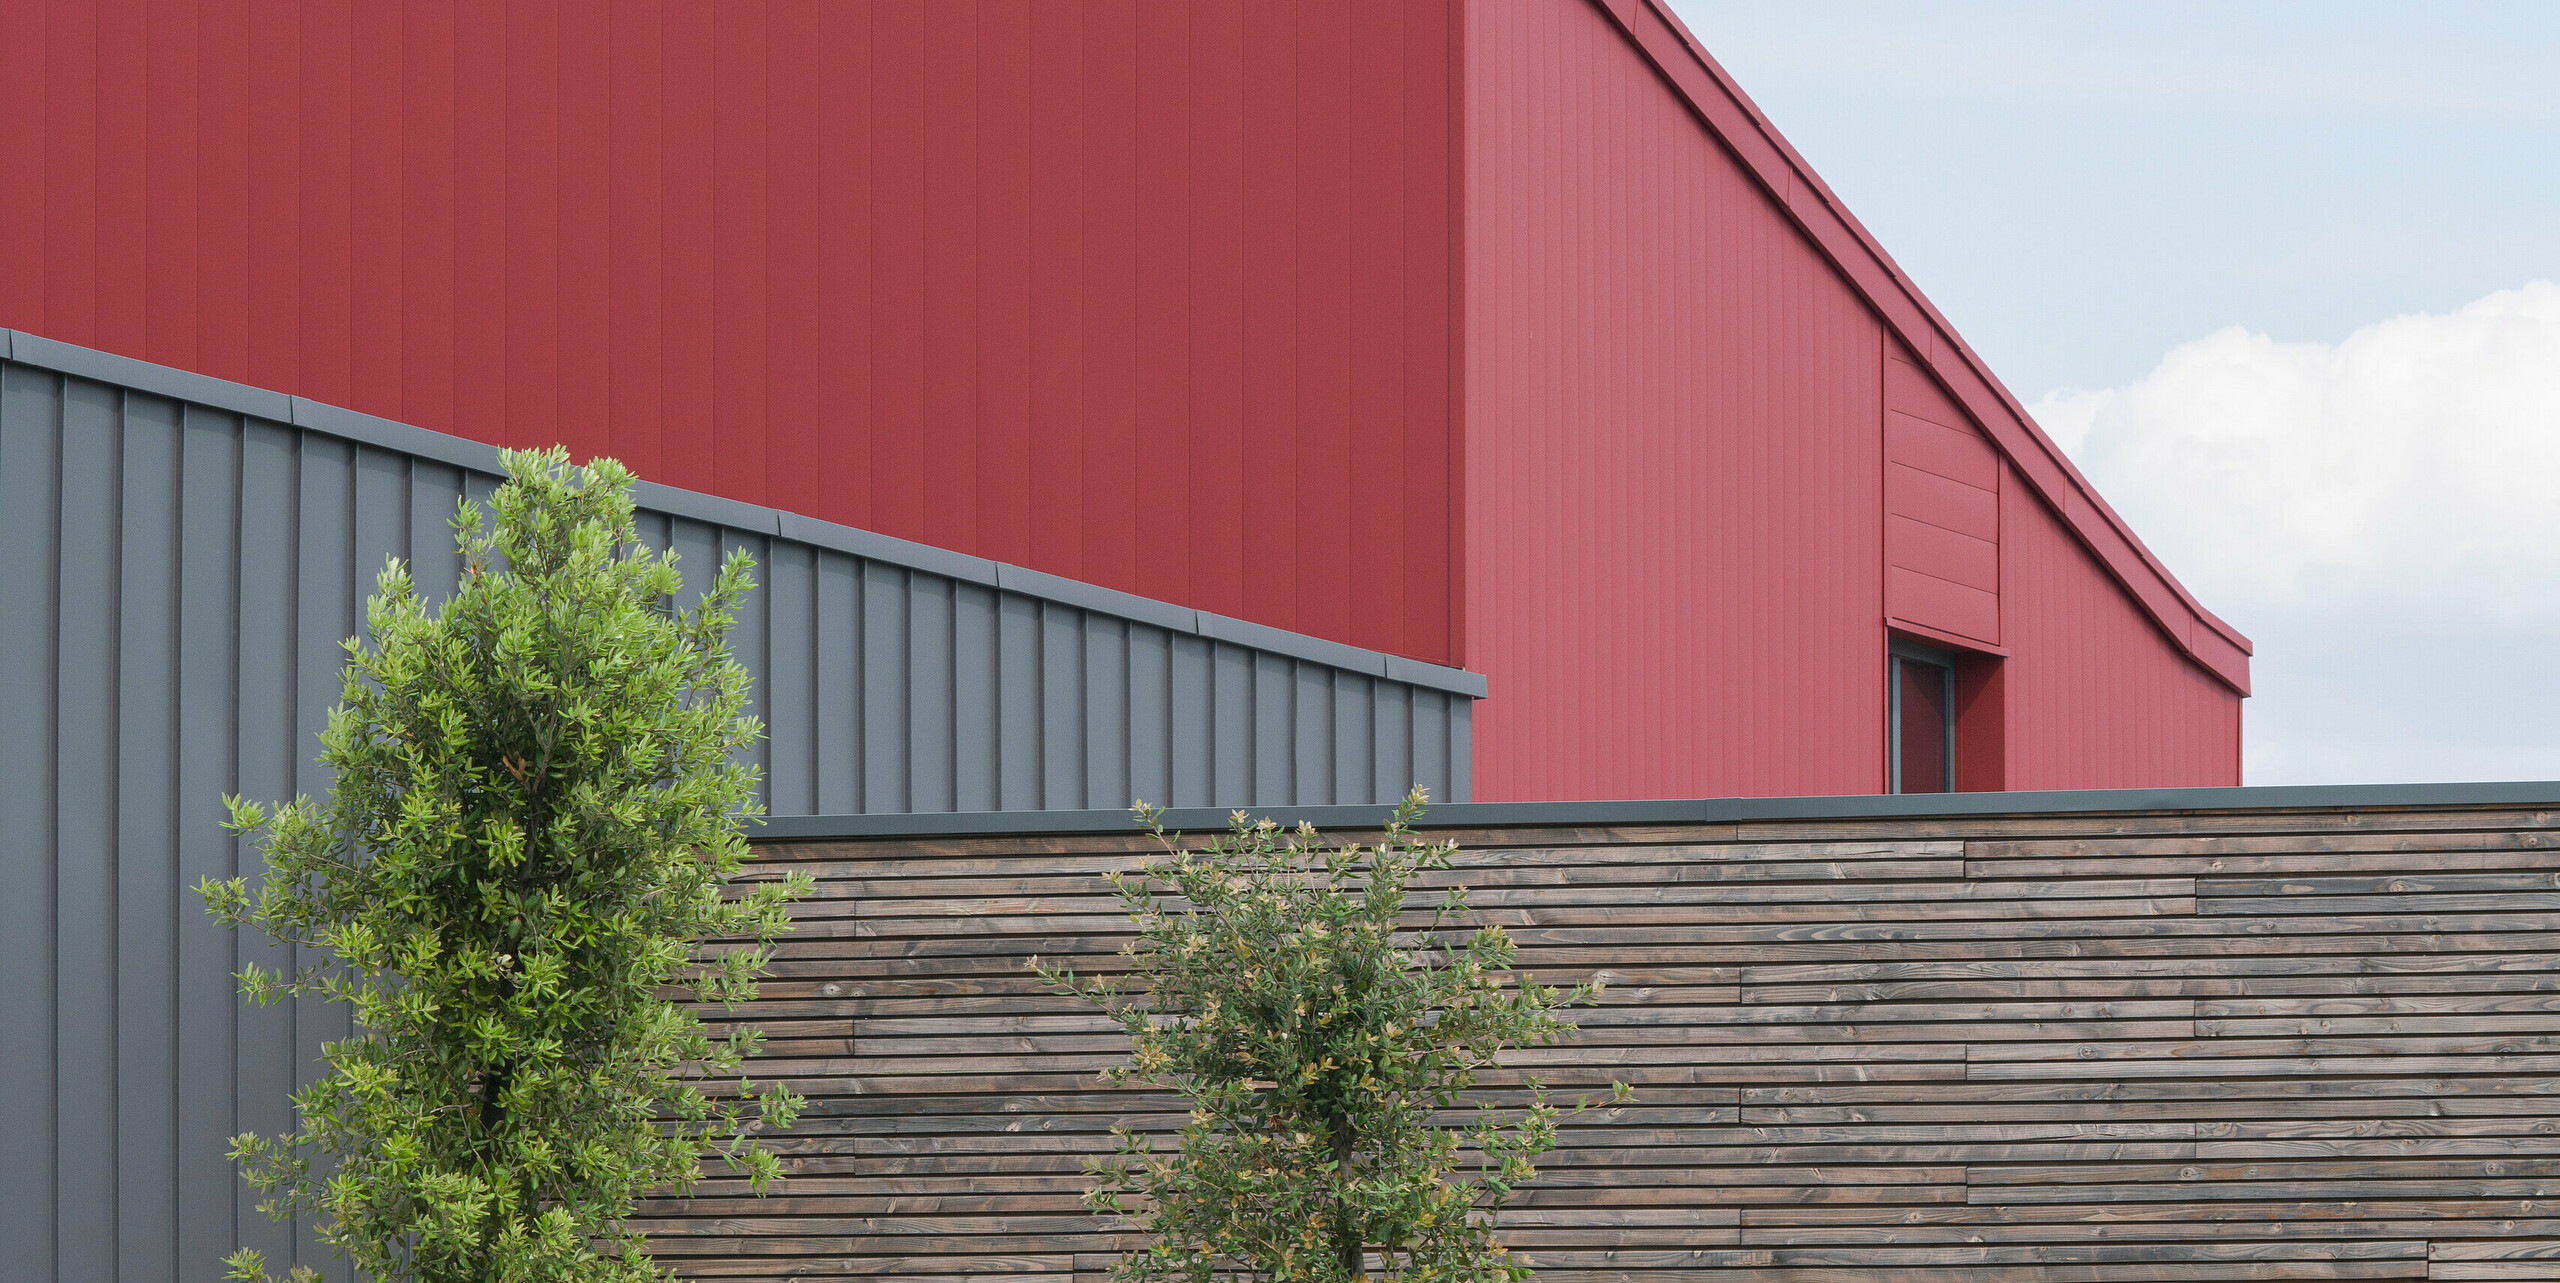 Moderní komerční budova s ​​nápadnou červenou hliníkovou fasádou. Výběr barvy hovoří jasnou architektonickou řečí. Strukturovaný, šedý hliníkový obklad tvoří jemný kontrast k výrazné červené.Odolný hliníkový obklad PREFALZ na fasádě a střeše poskytuje ideální ochranu před všemi povětrnostními vlivy. Doplňkový přírodní dřevěný obklad zprostředkovává teplo a přirozenost. Před budovou jsou vidět mladé stromky pečlivě zajištěné podpěrnými sloupky. Dobře udržovaný záhon dodává další barvu a život. Nabíjecí stanice pro elektromobily v popředí ukazuje závazek k udržitelným energetickým řešením.